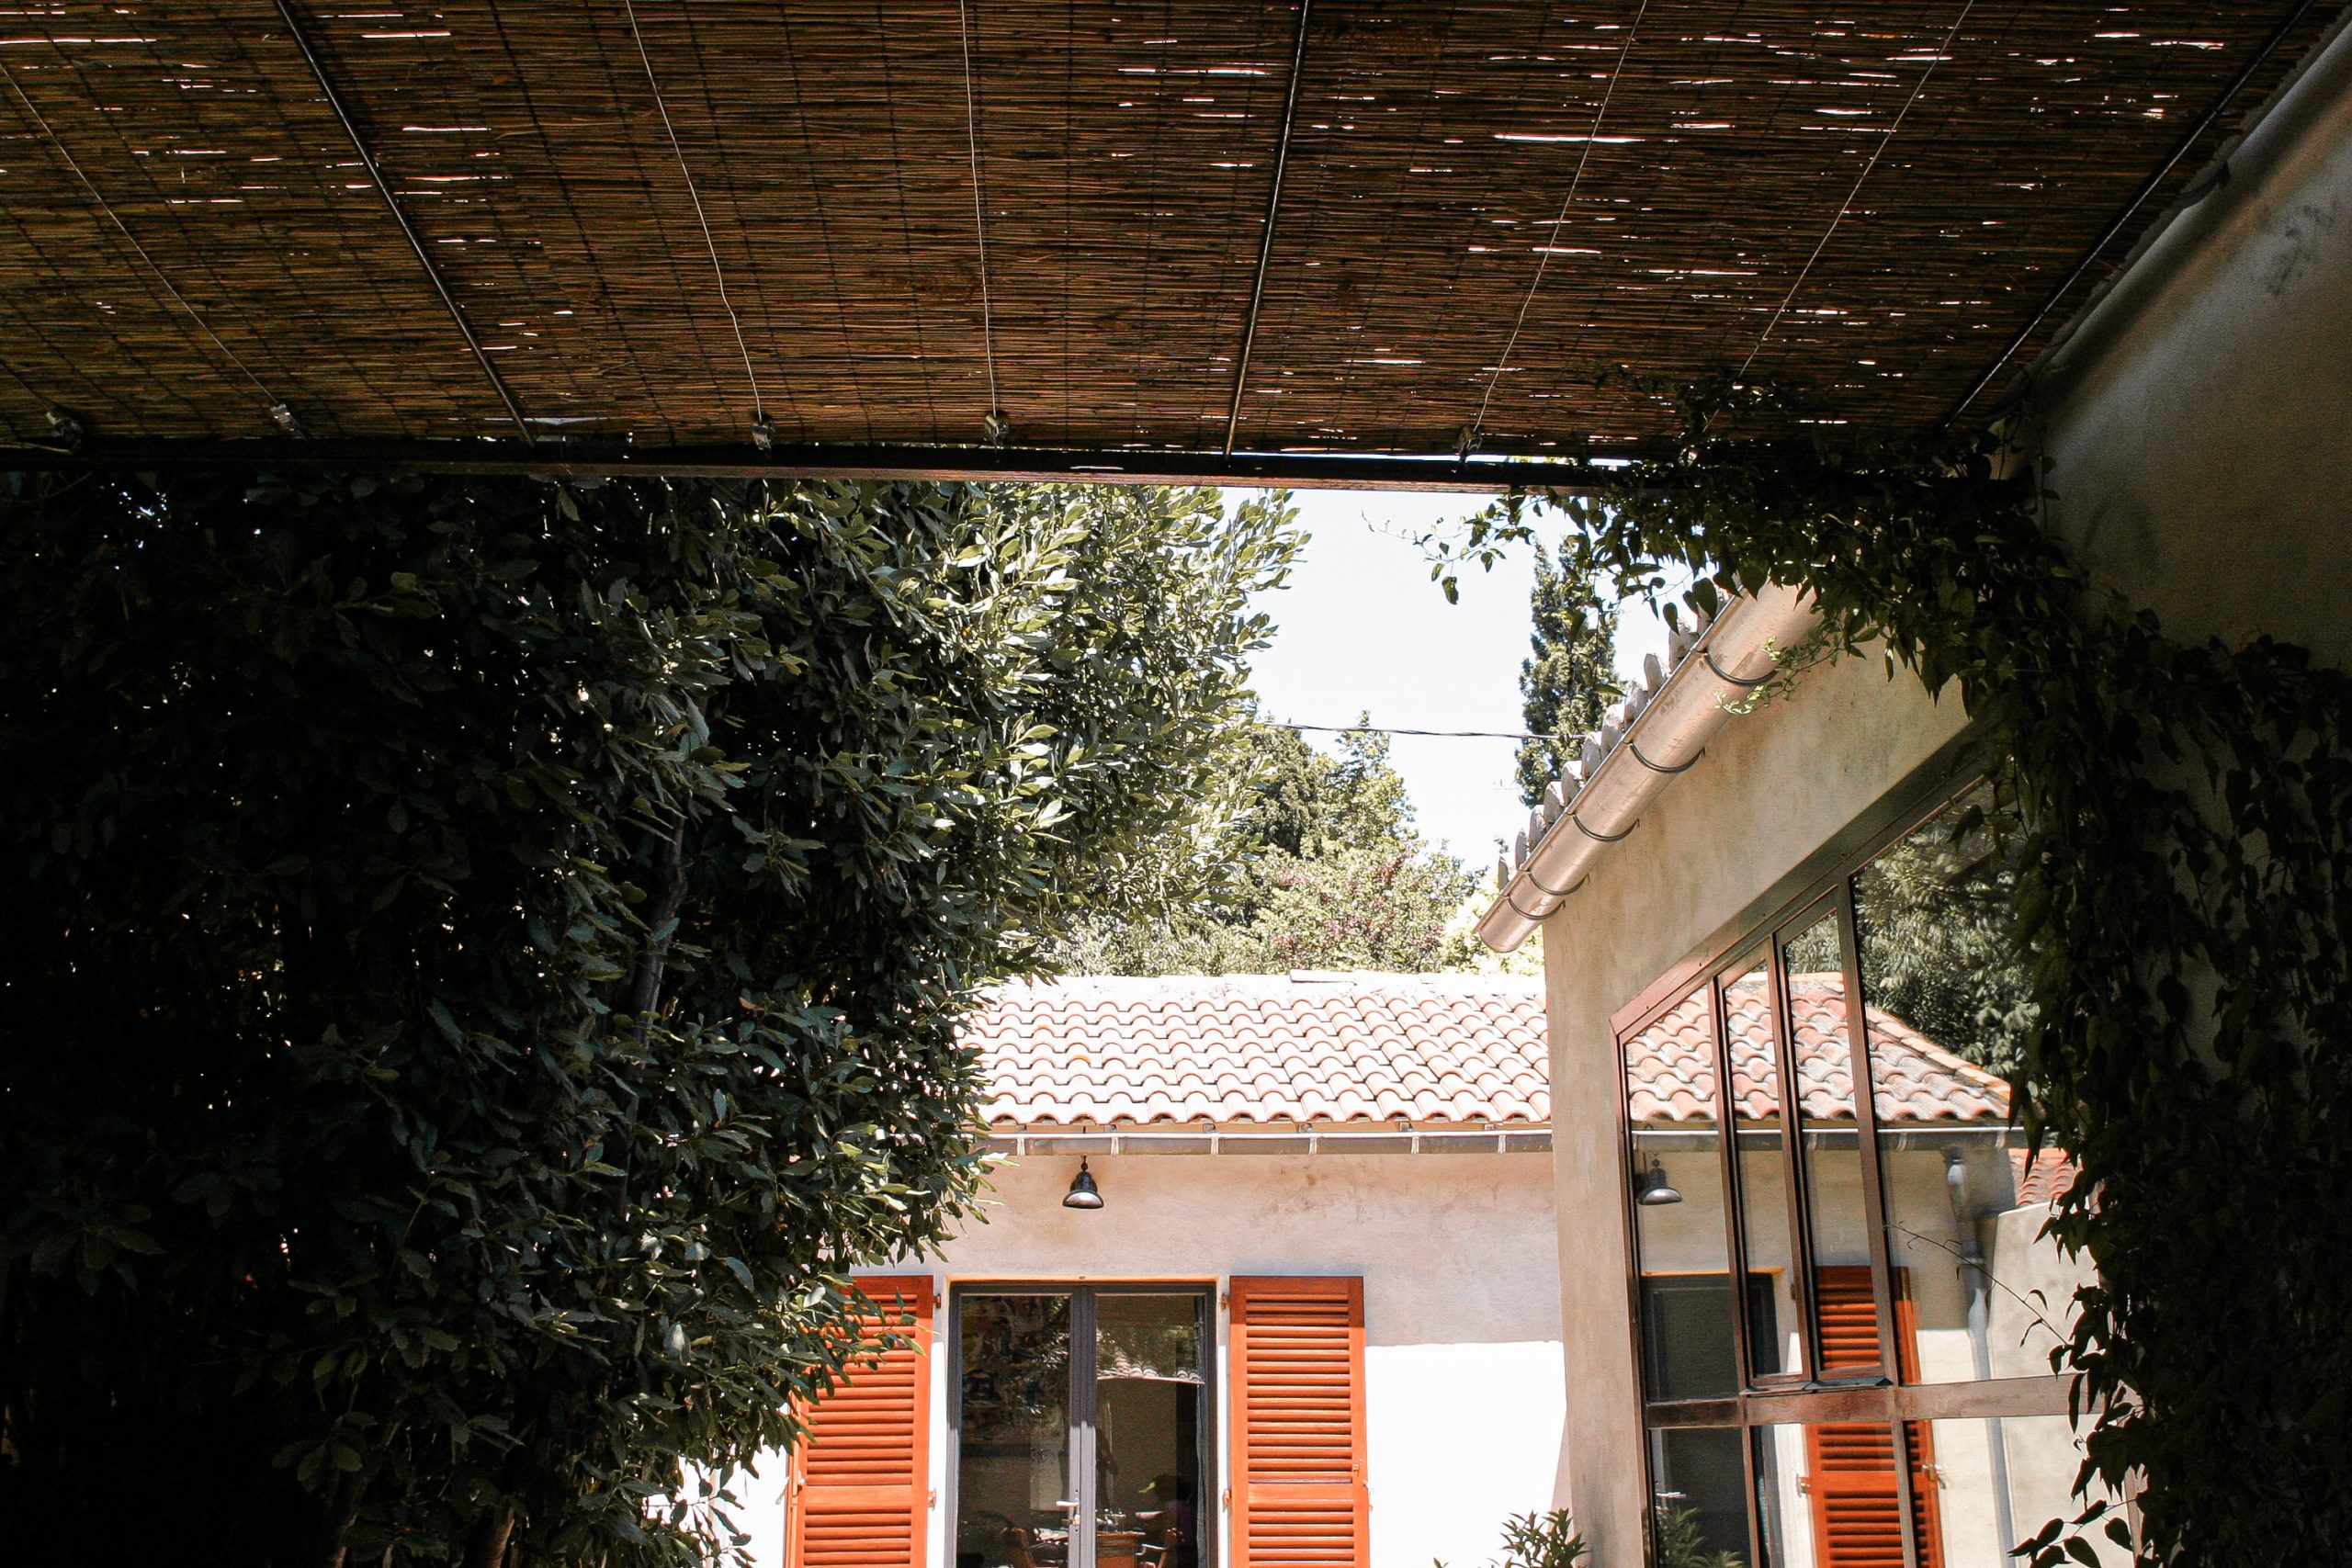 Maison sous le soleil provençal